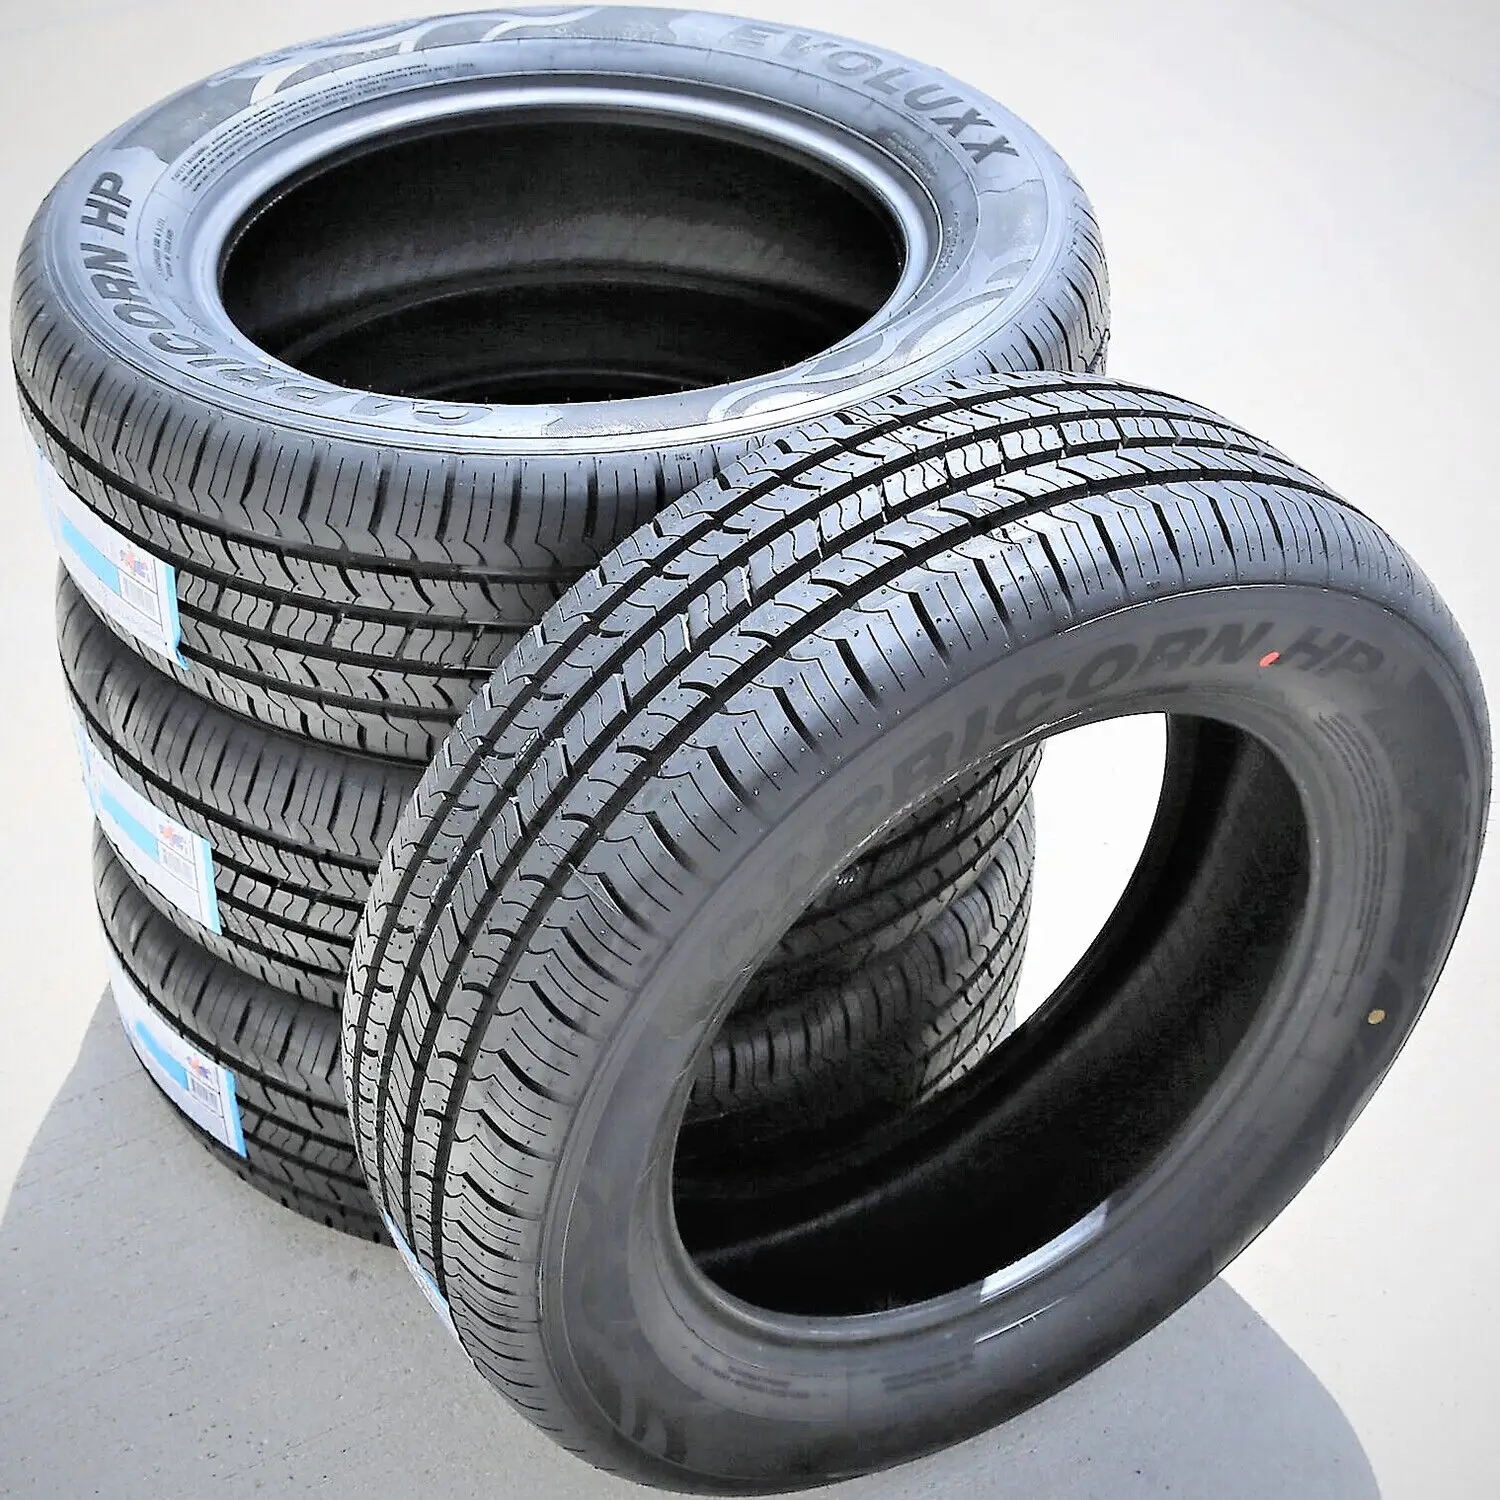 बिक्री के लिए गुणवत्तापूर्ण प्रयुक्त कार टायर/थोक में निर्यात के लिए सर्वोत्तम ग्रेड कार टायर, बिक्री के लिए यूरोपीय सभी ग्रेड के प्रयुक्त टायर